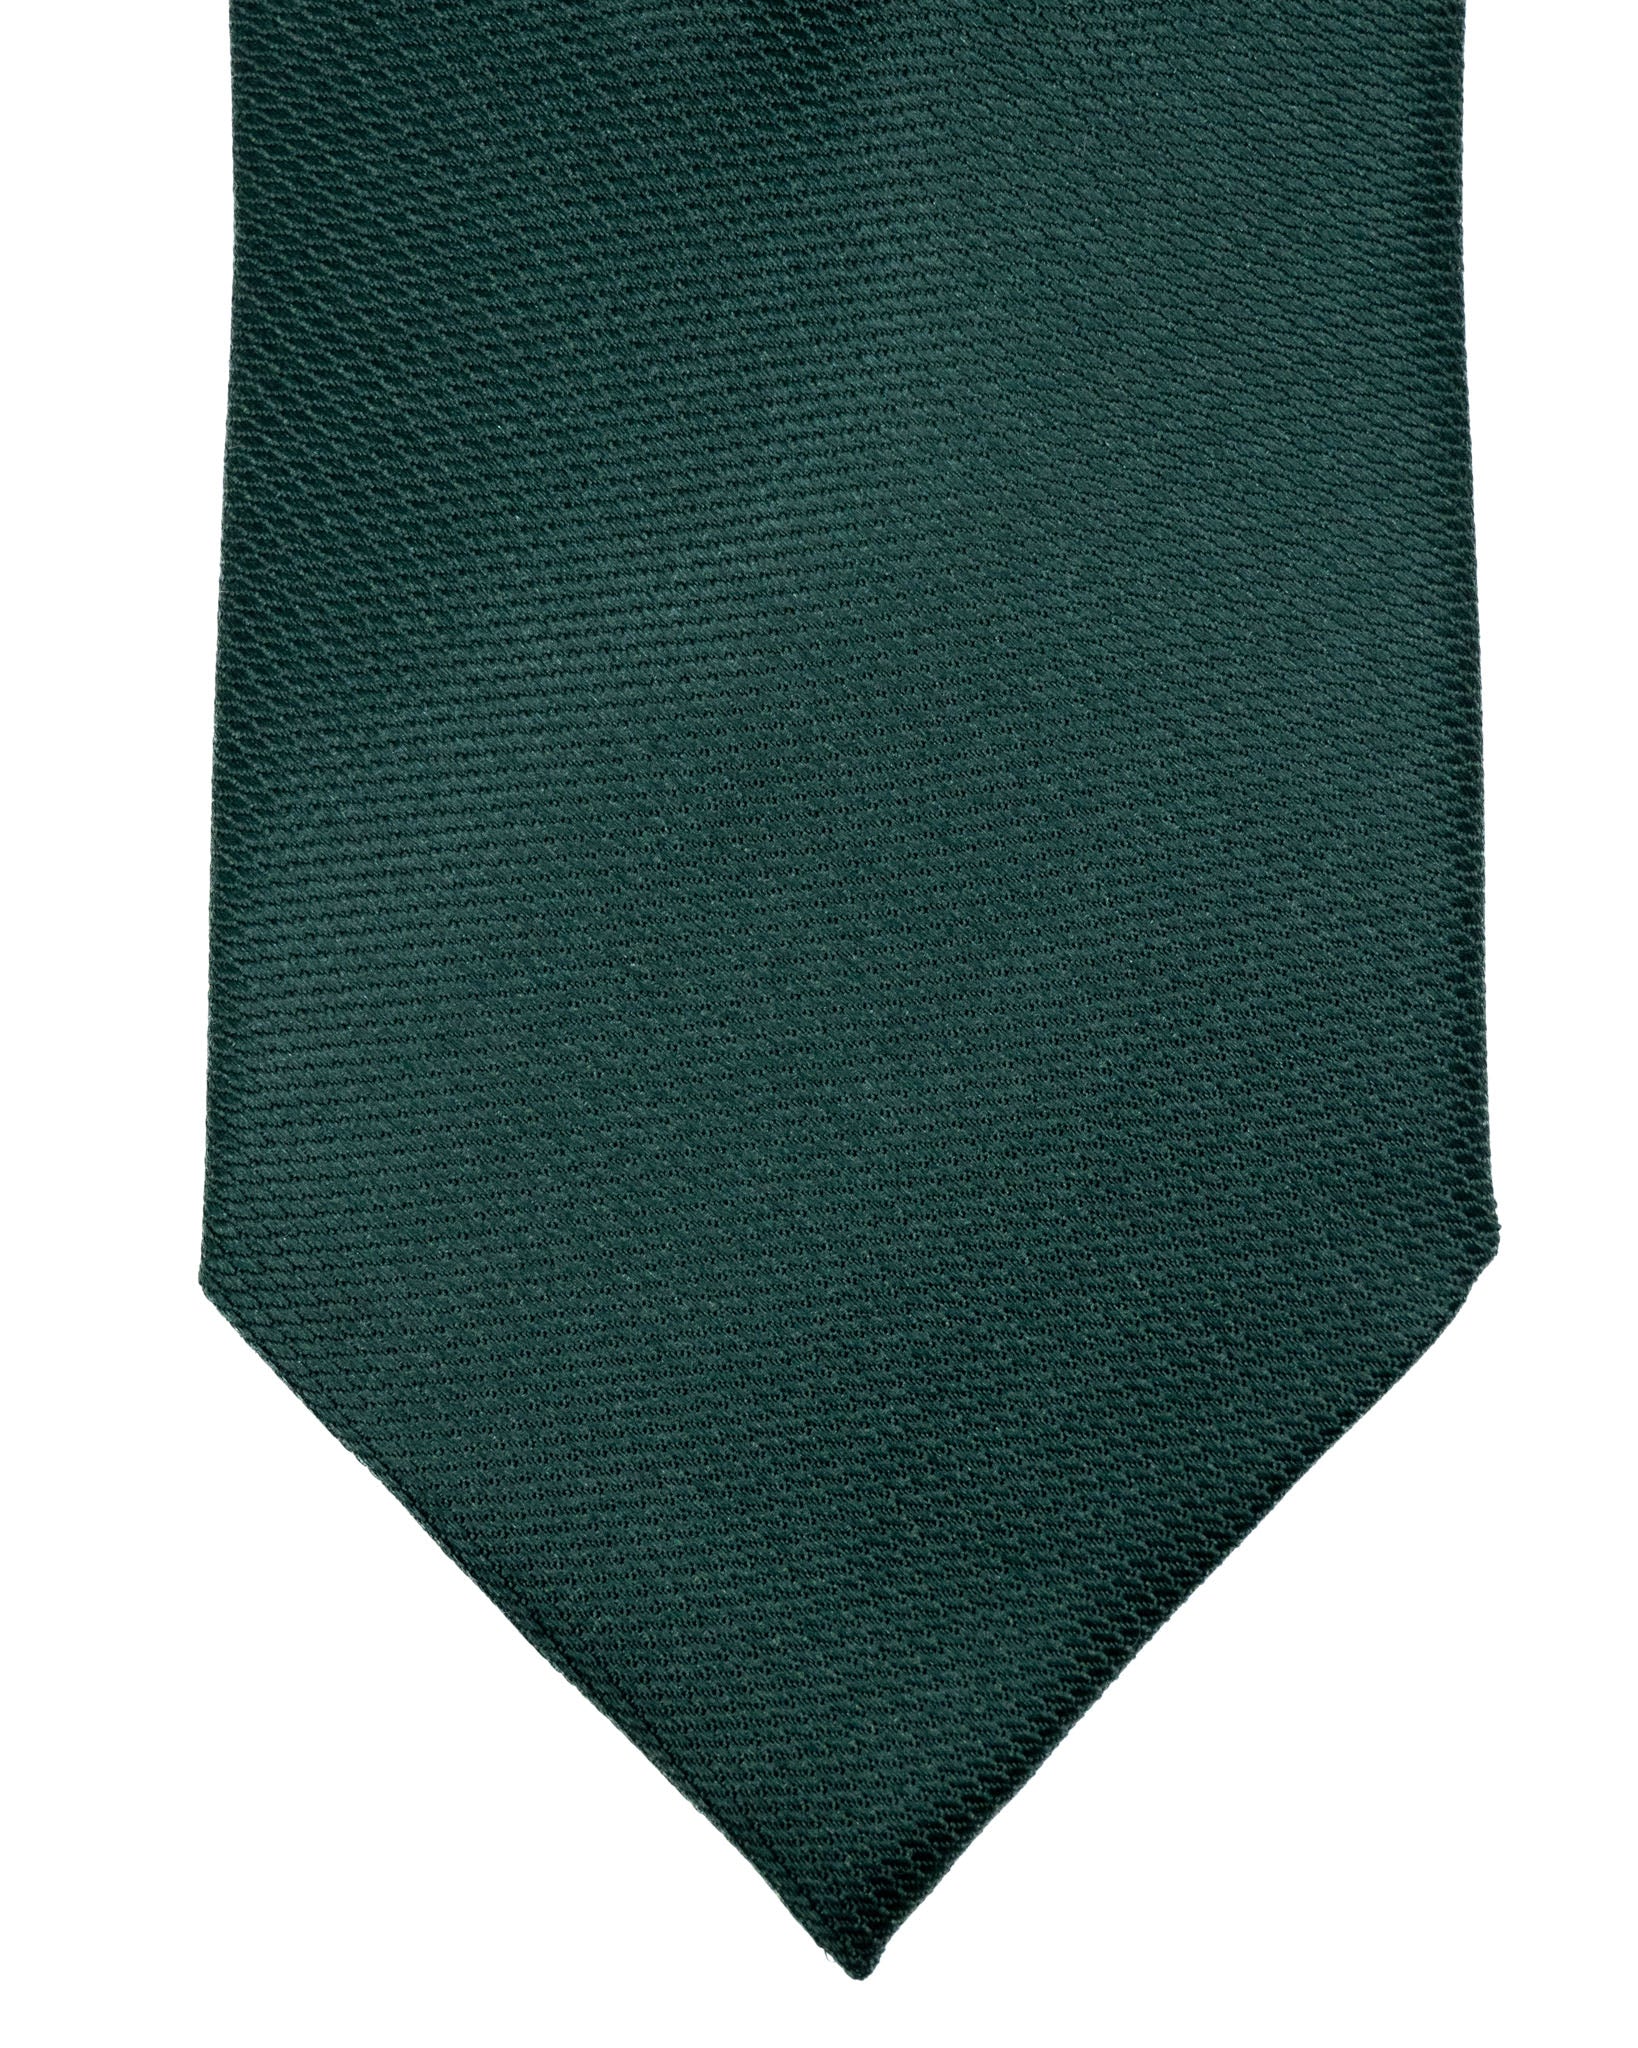 Cravate - en soie tissée verte